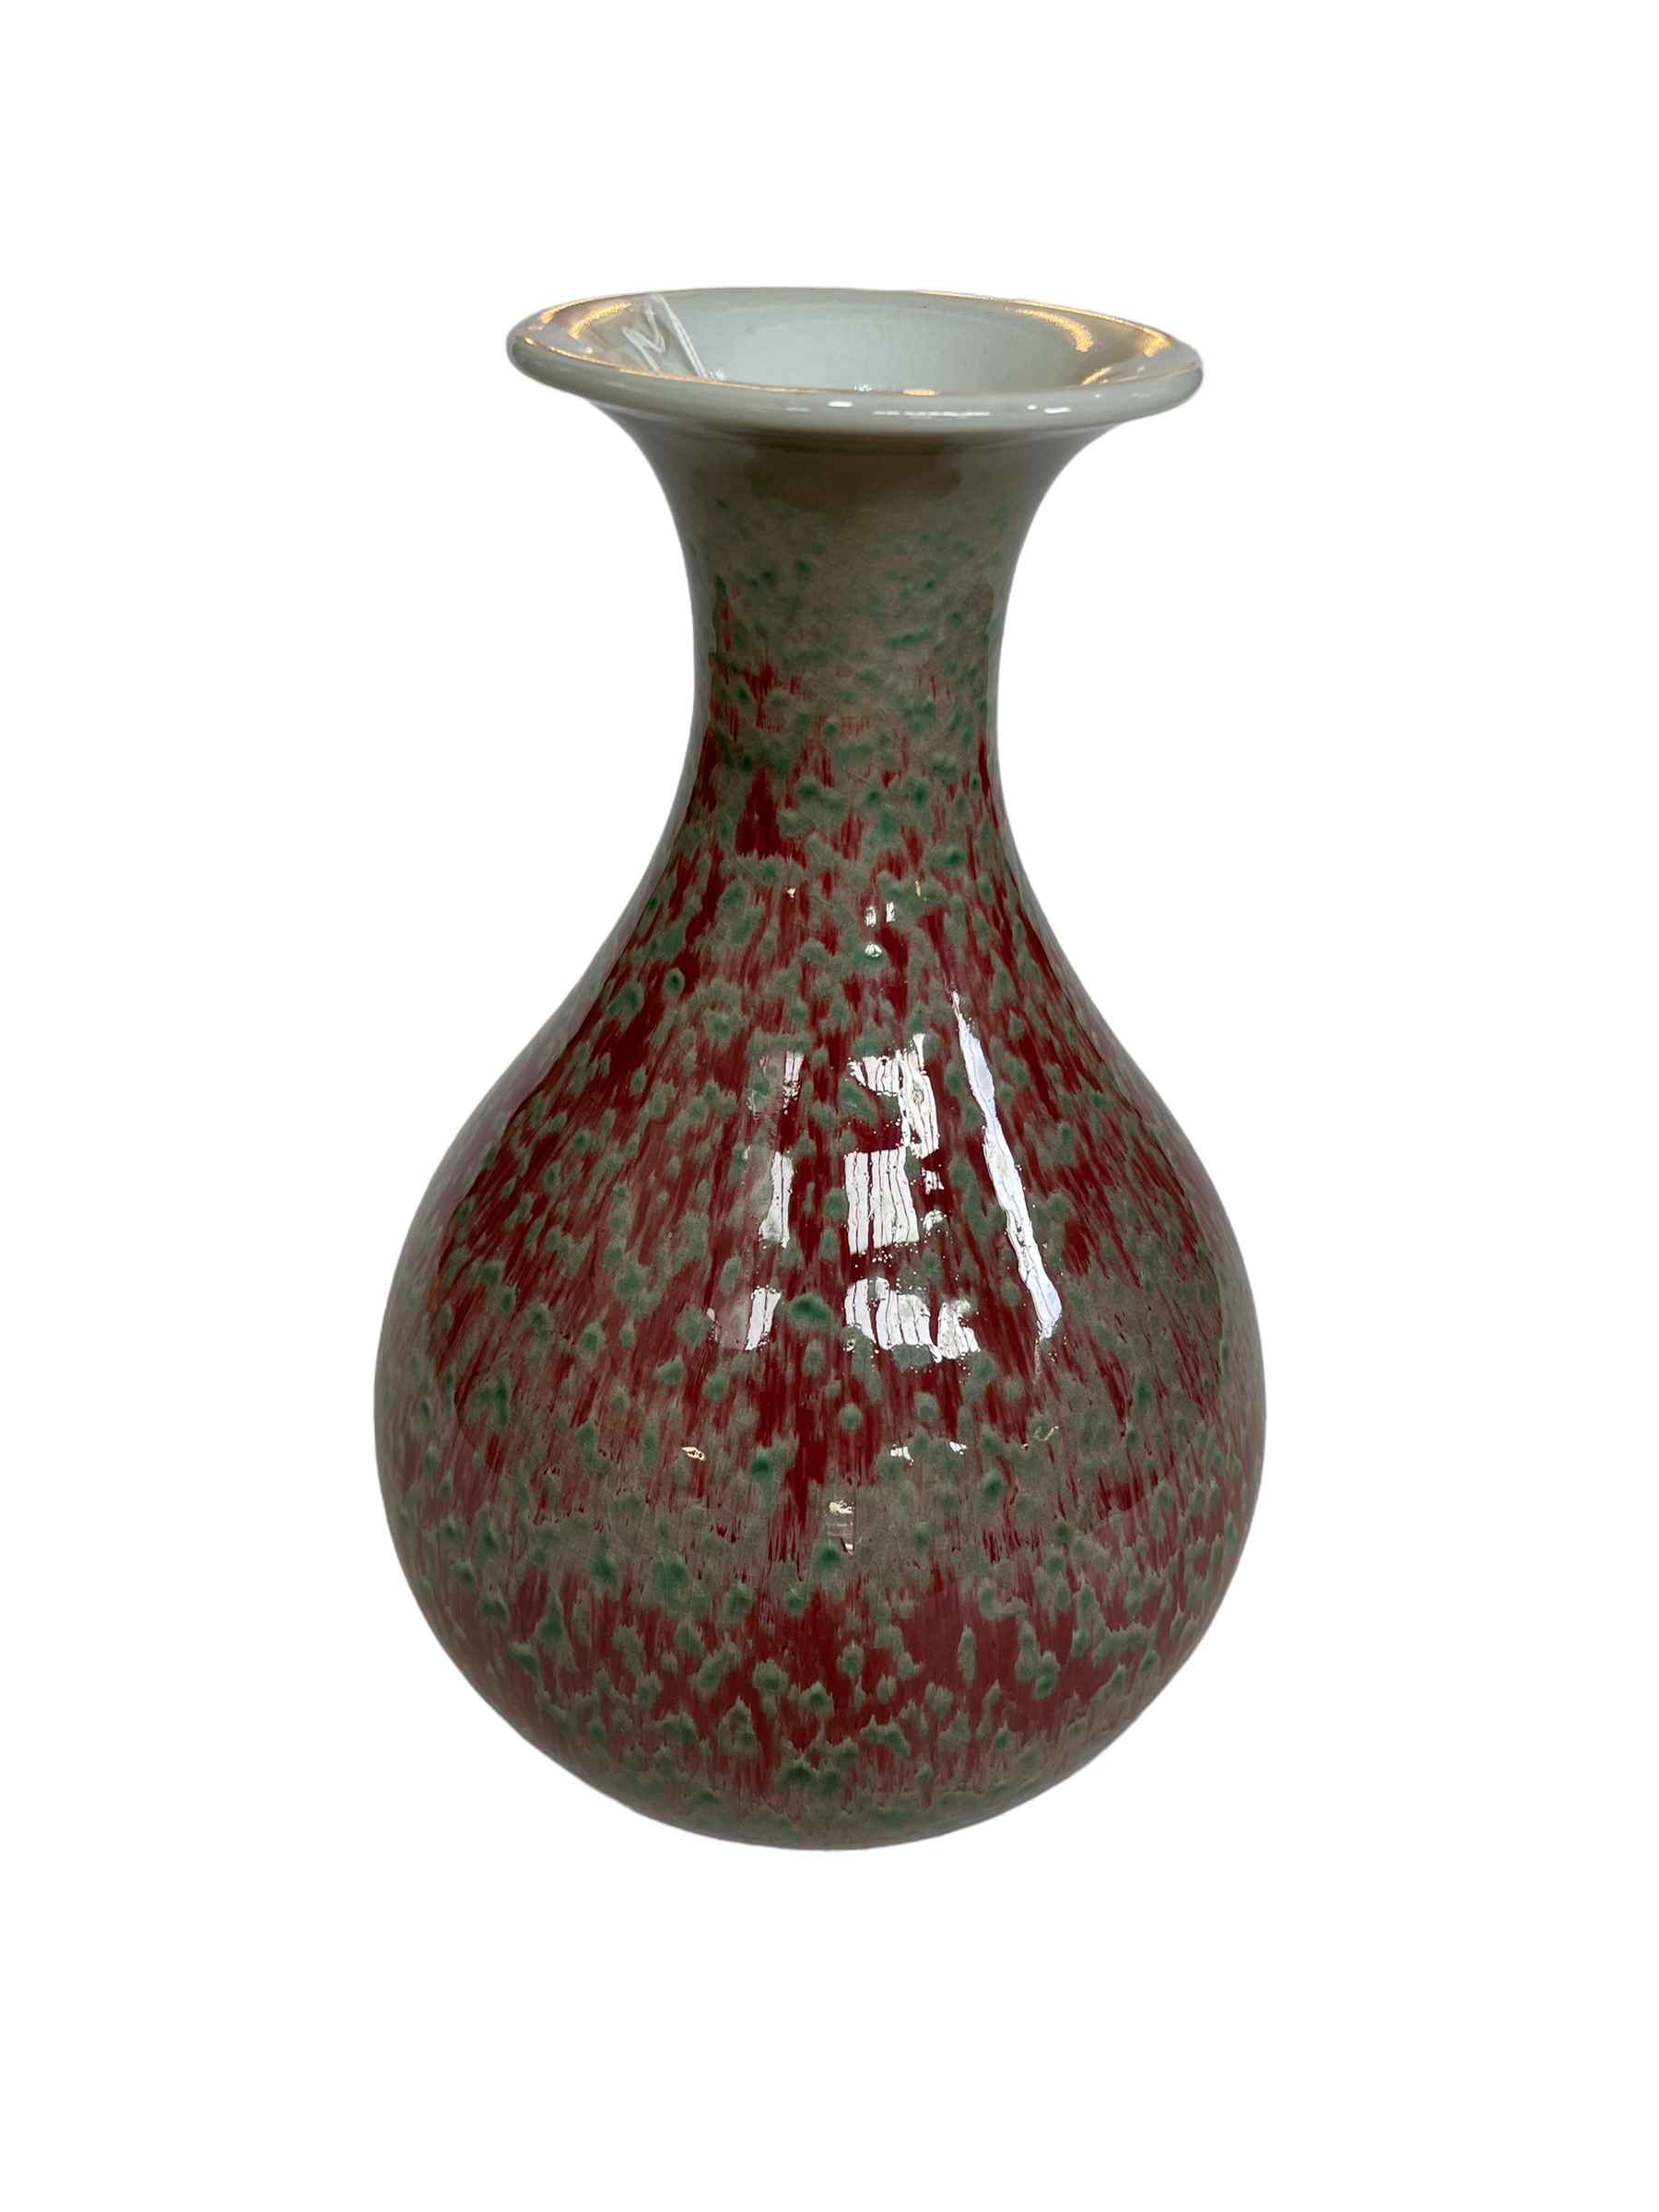 Chinese Jingdezhen streak glazed vase, 31cm.